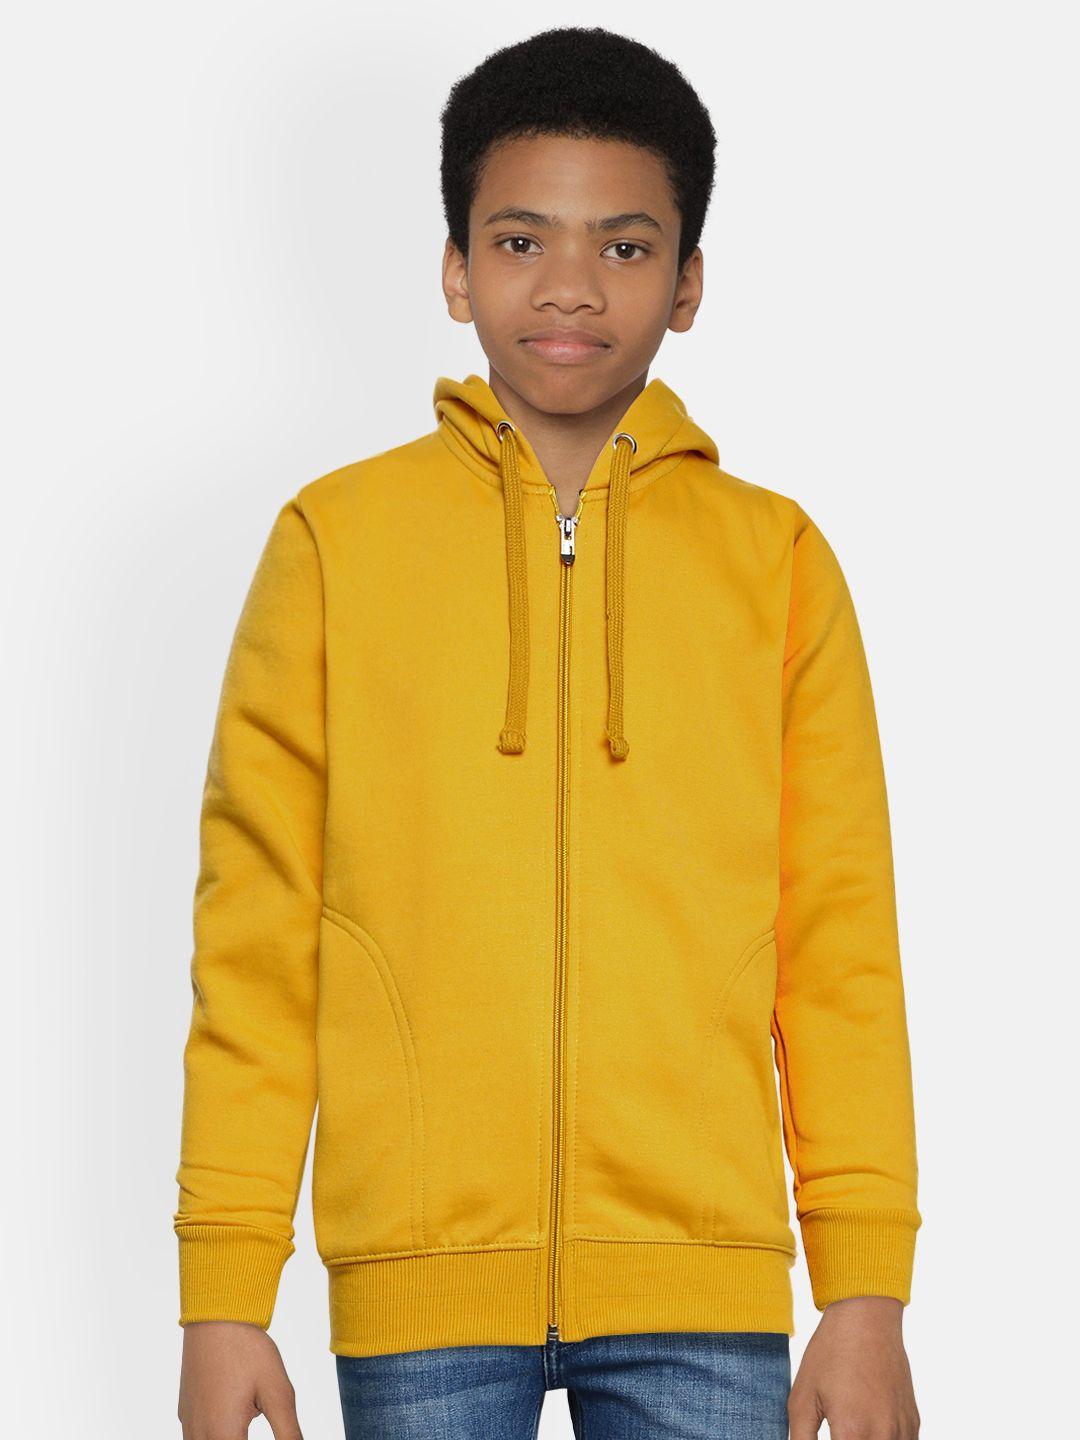 adbucks boys mustard yellow solid hooded sweatshirt